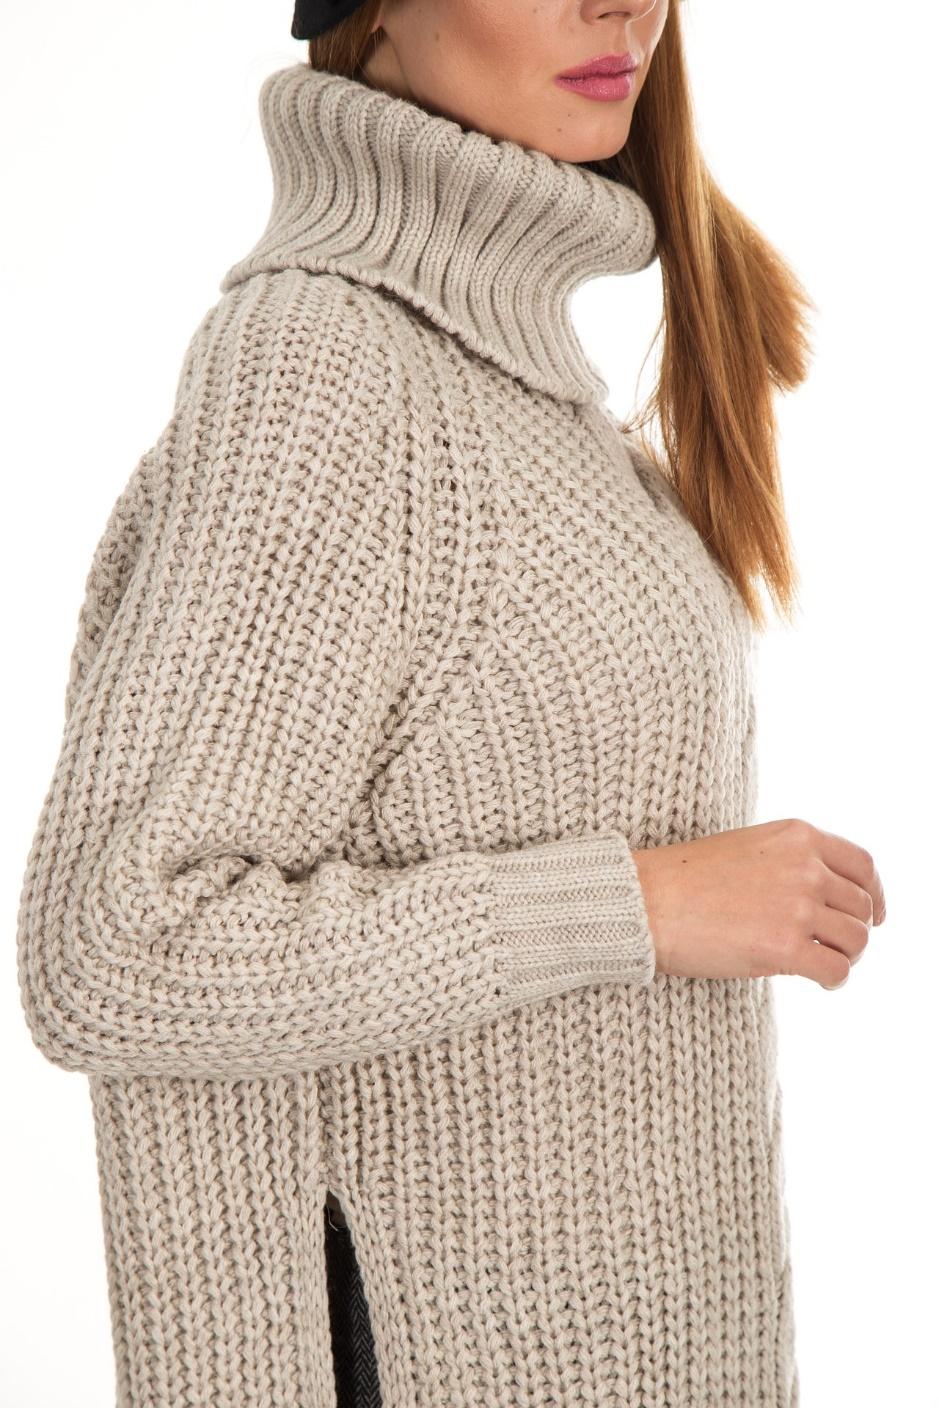 Girl wearing wool sweater